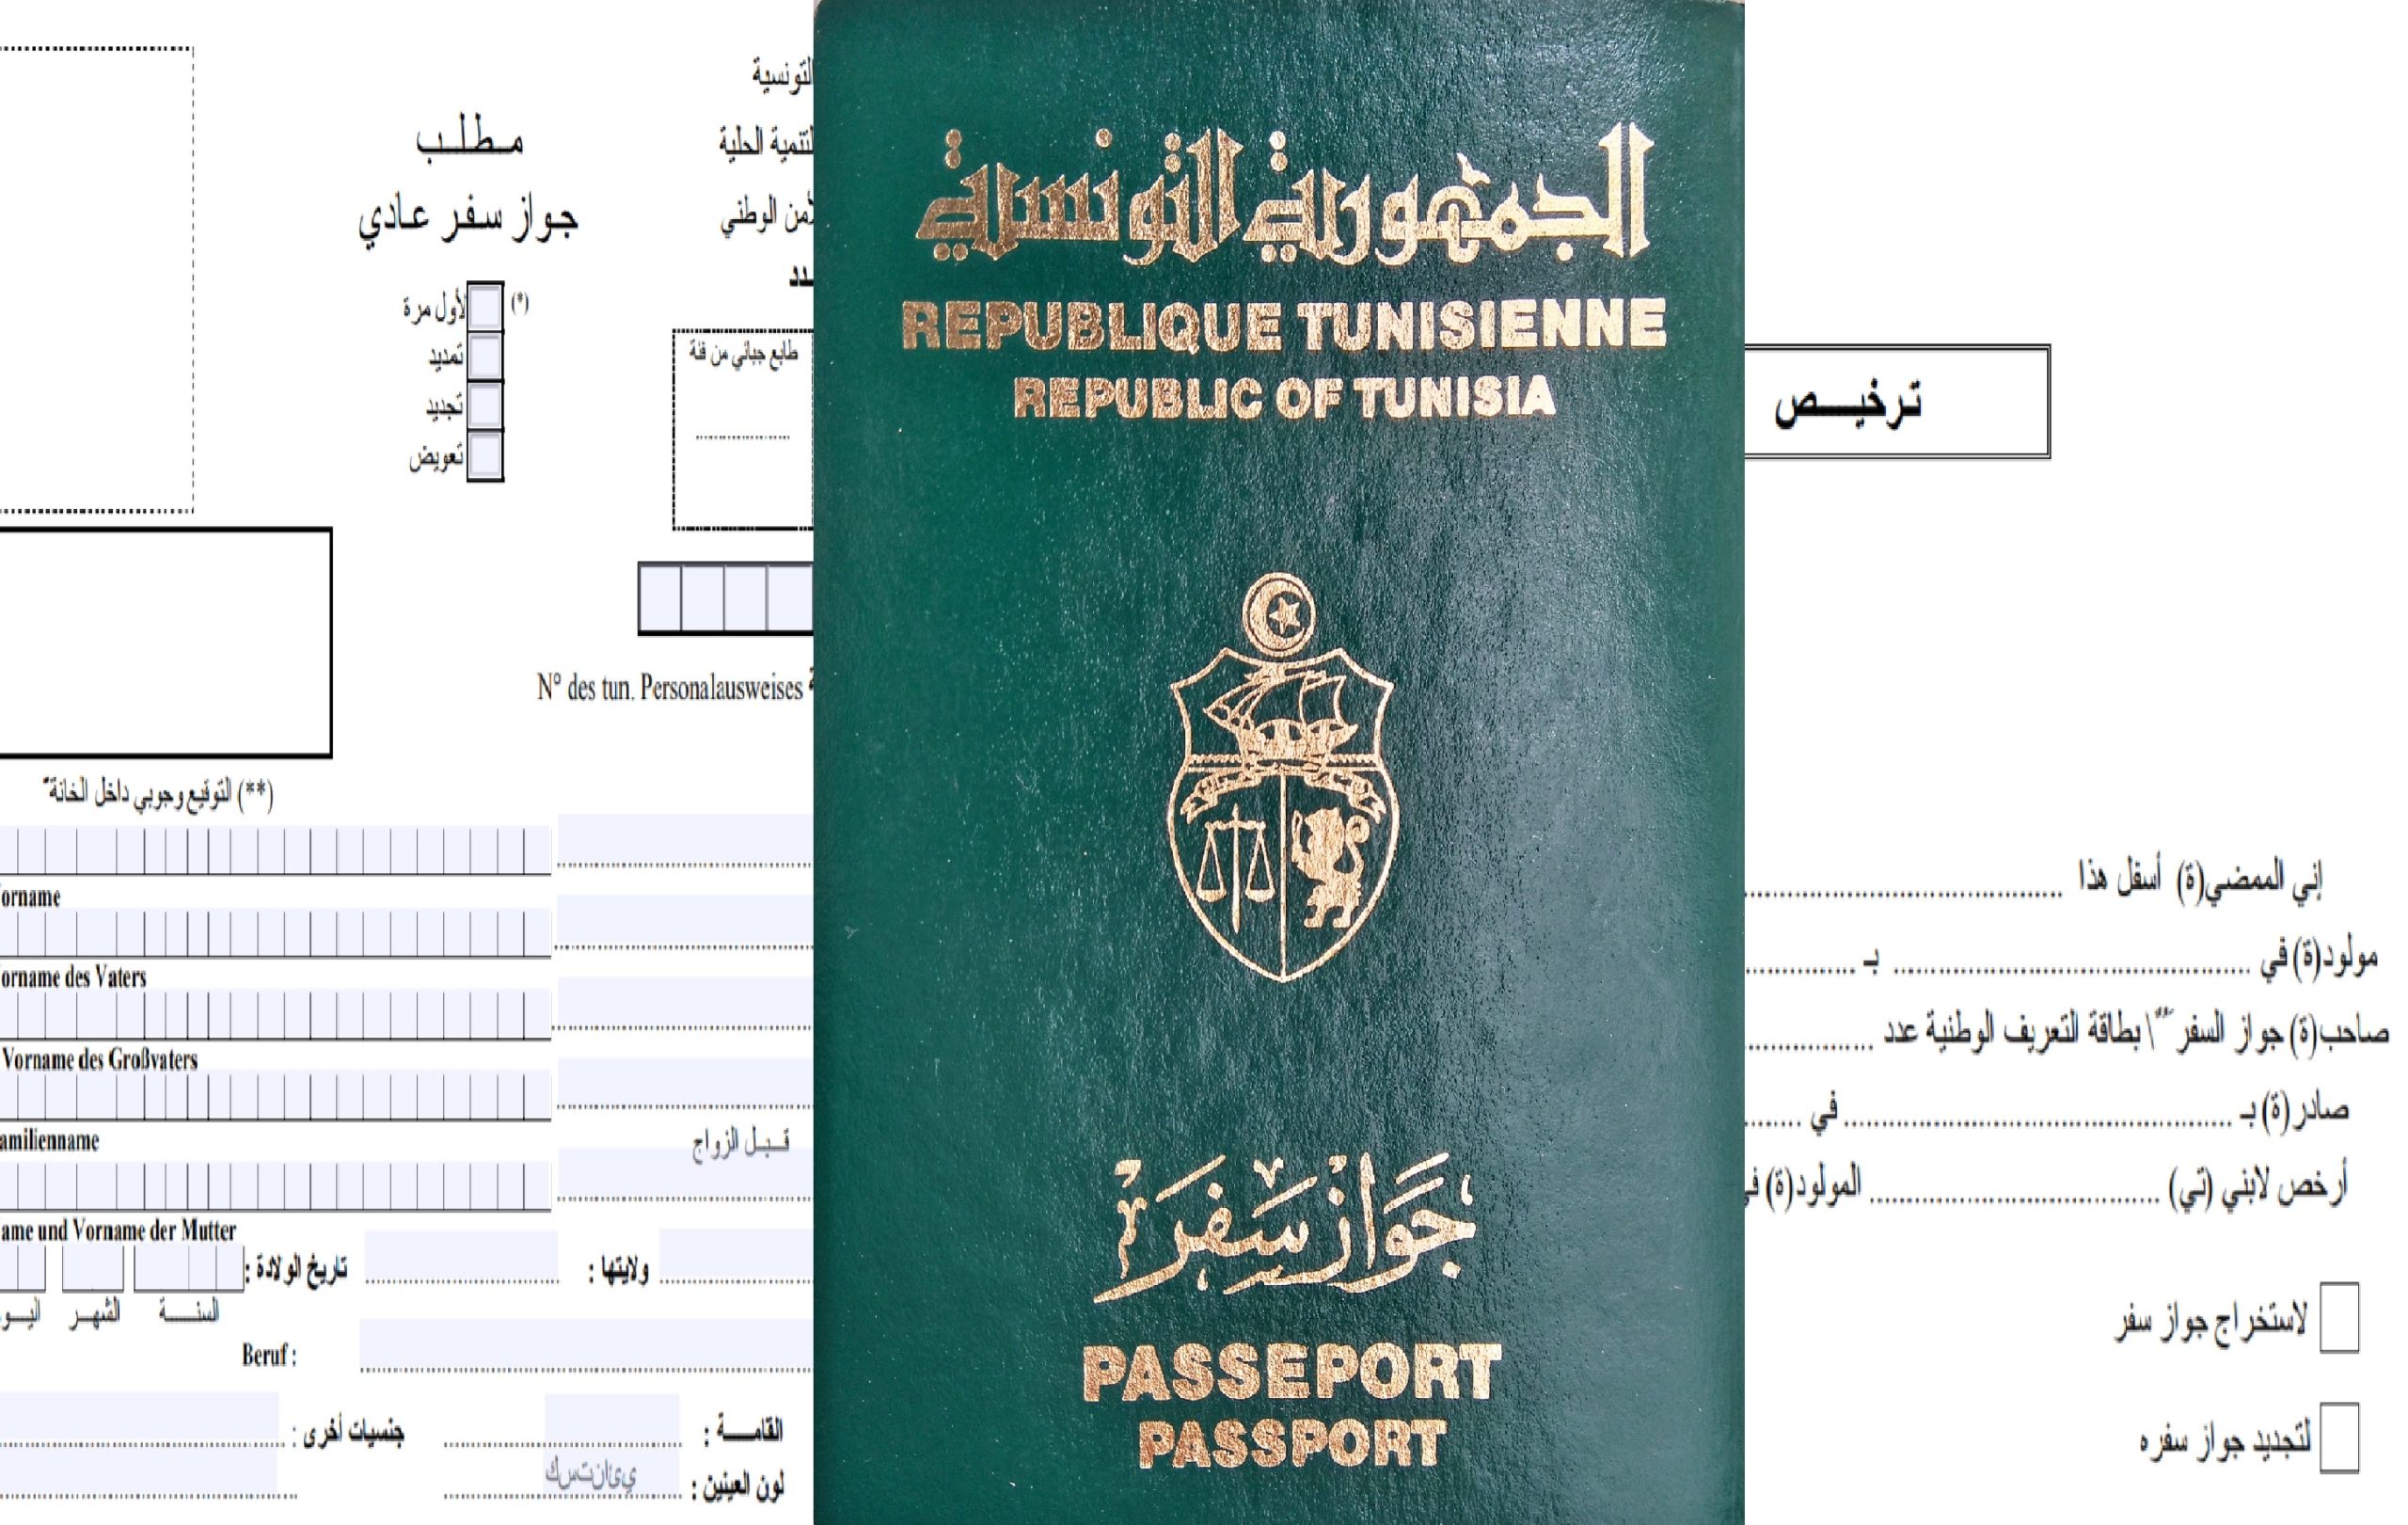 الحصول على جواز سفر لأوّل مرّة أو تجديده بالنسبة للتونسيّين المقيمين بالتراب التونسي